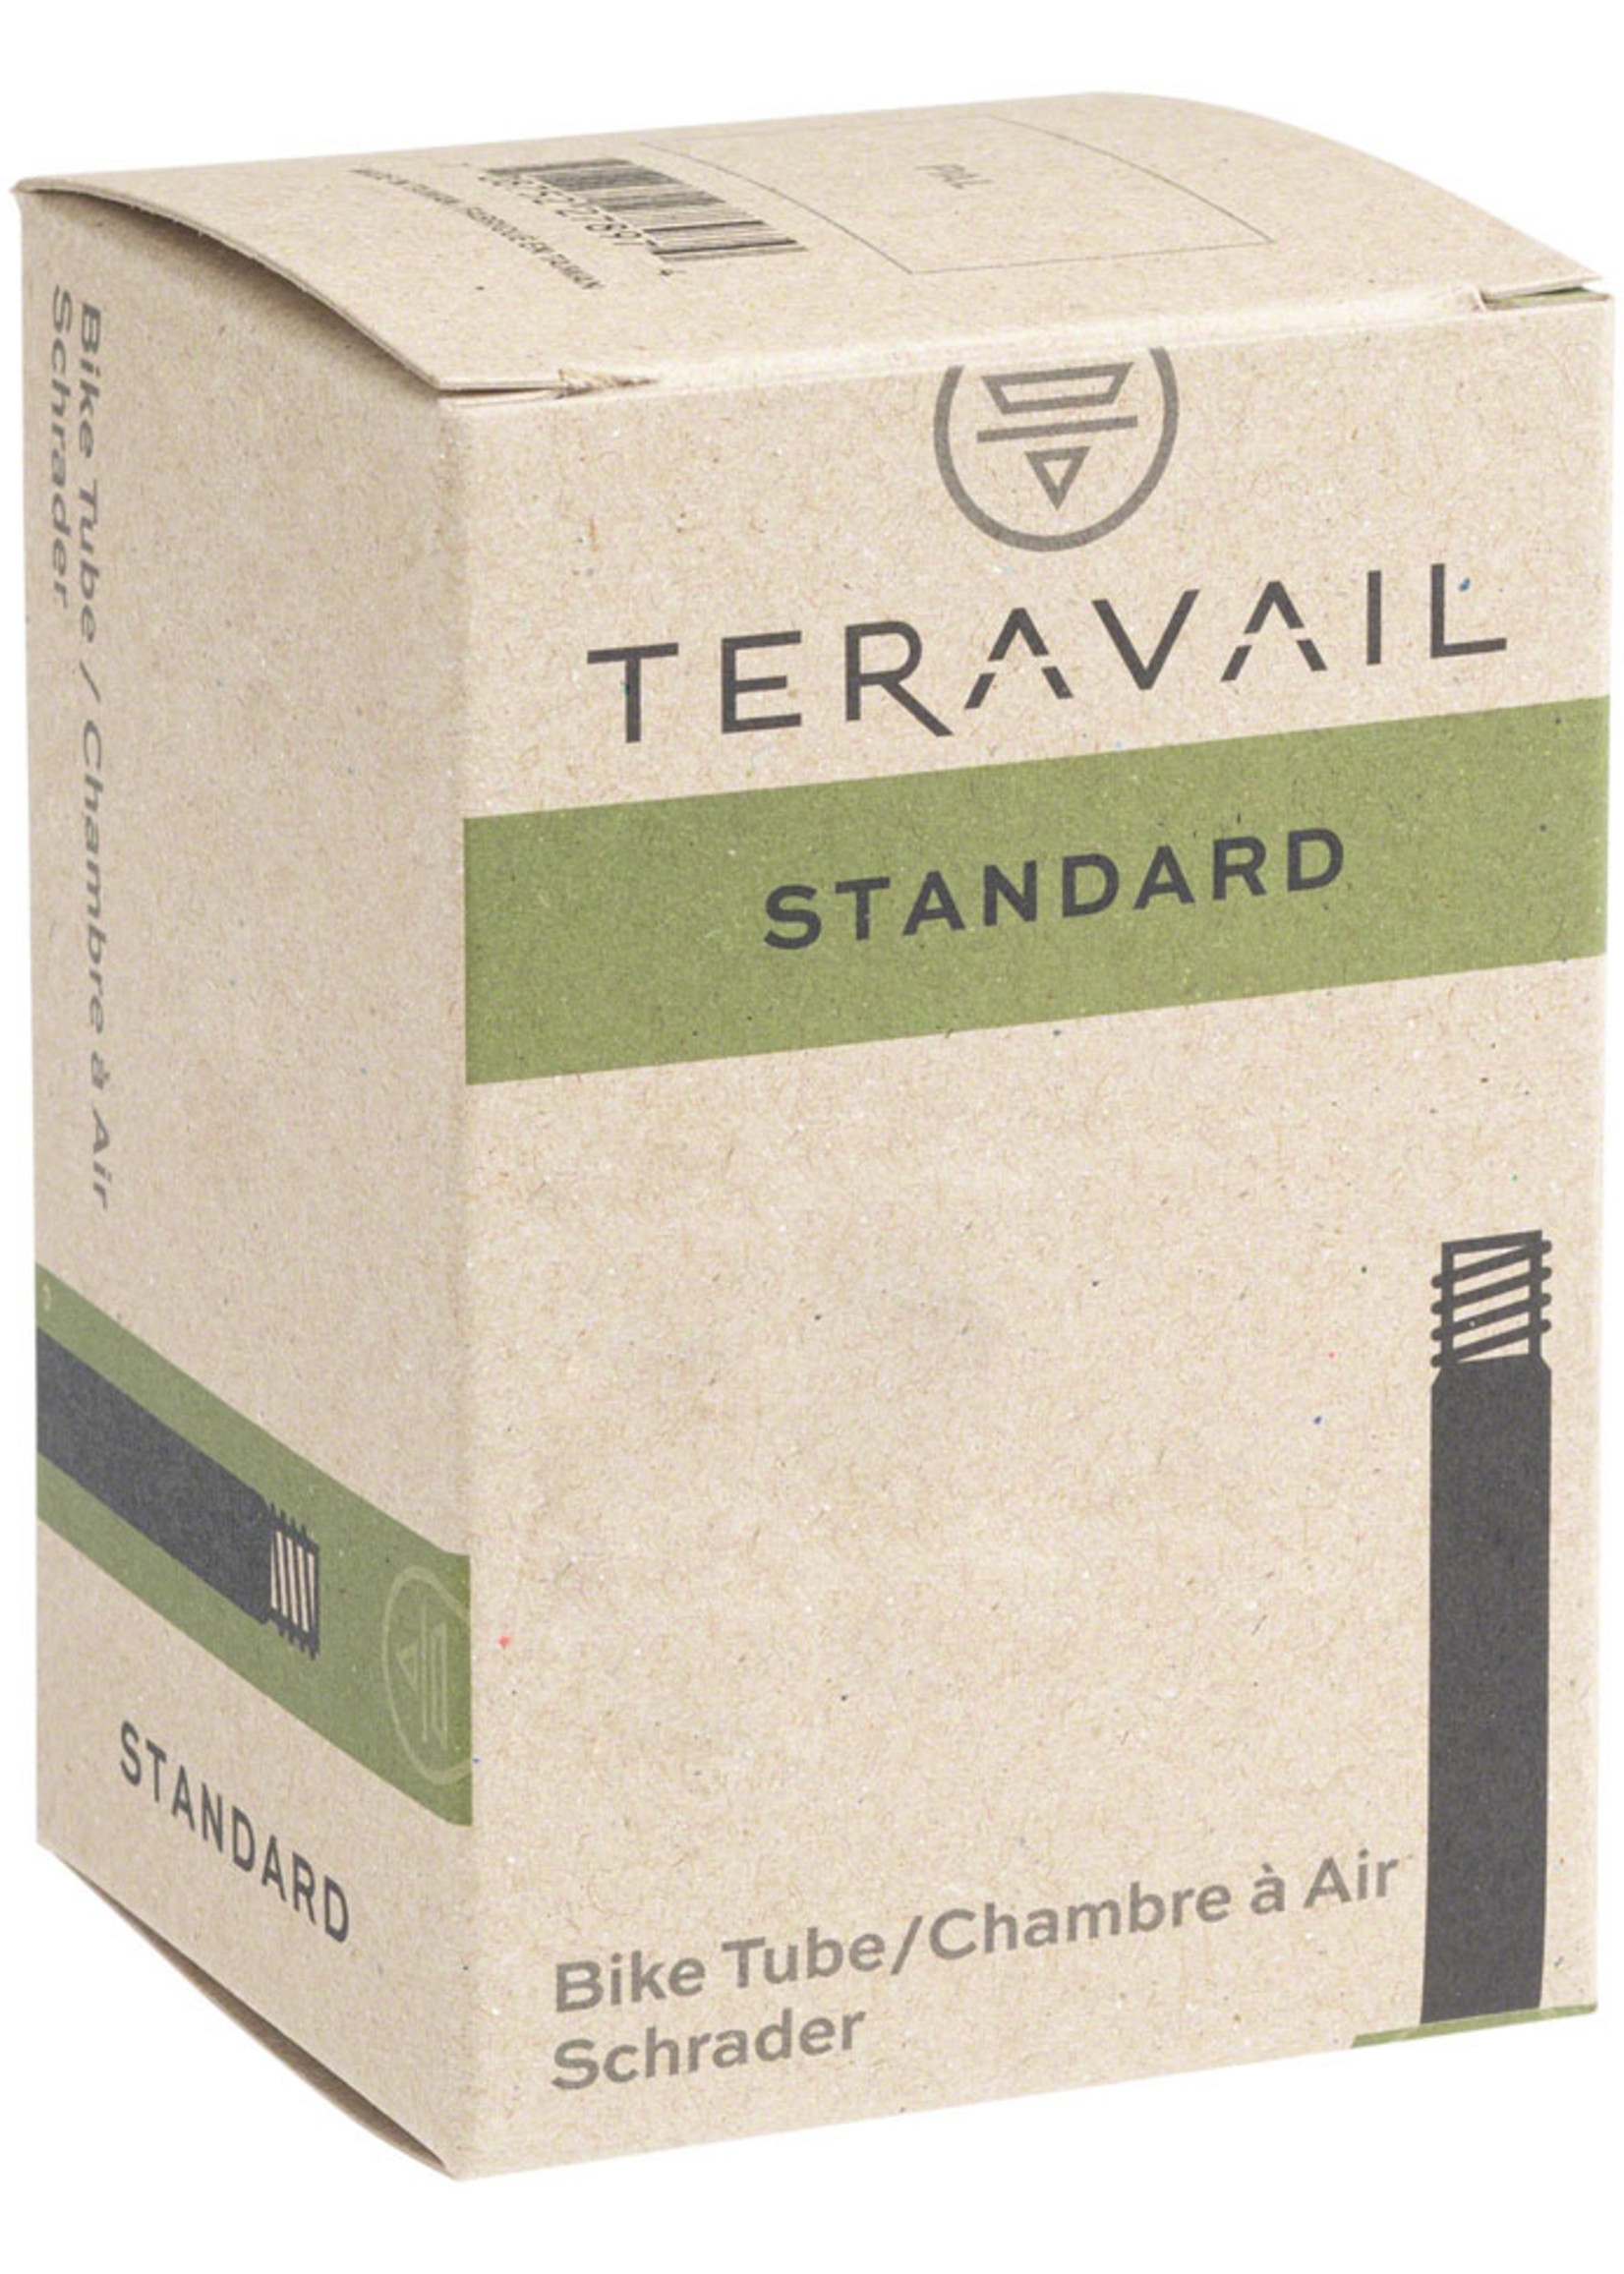 Teravail Standard Schrader Tube - 24x2.75-3.00, 35mm